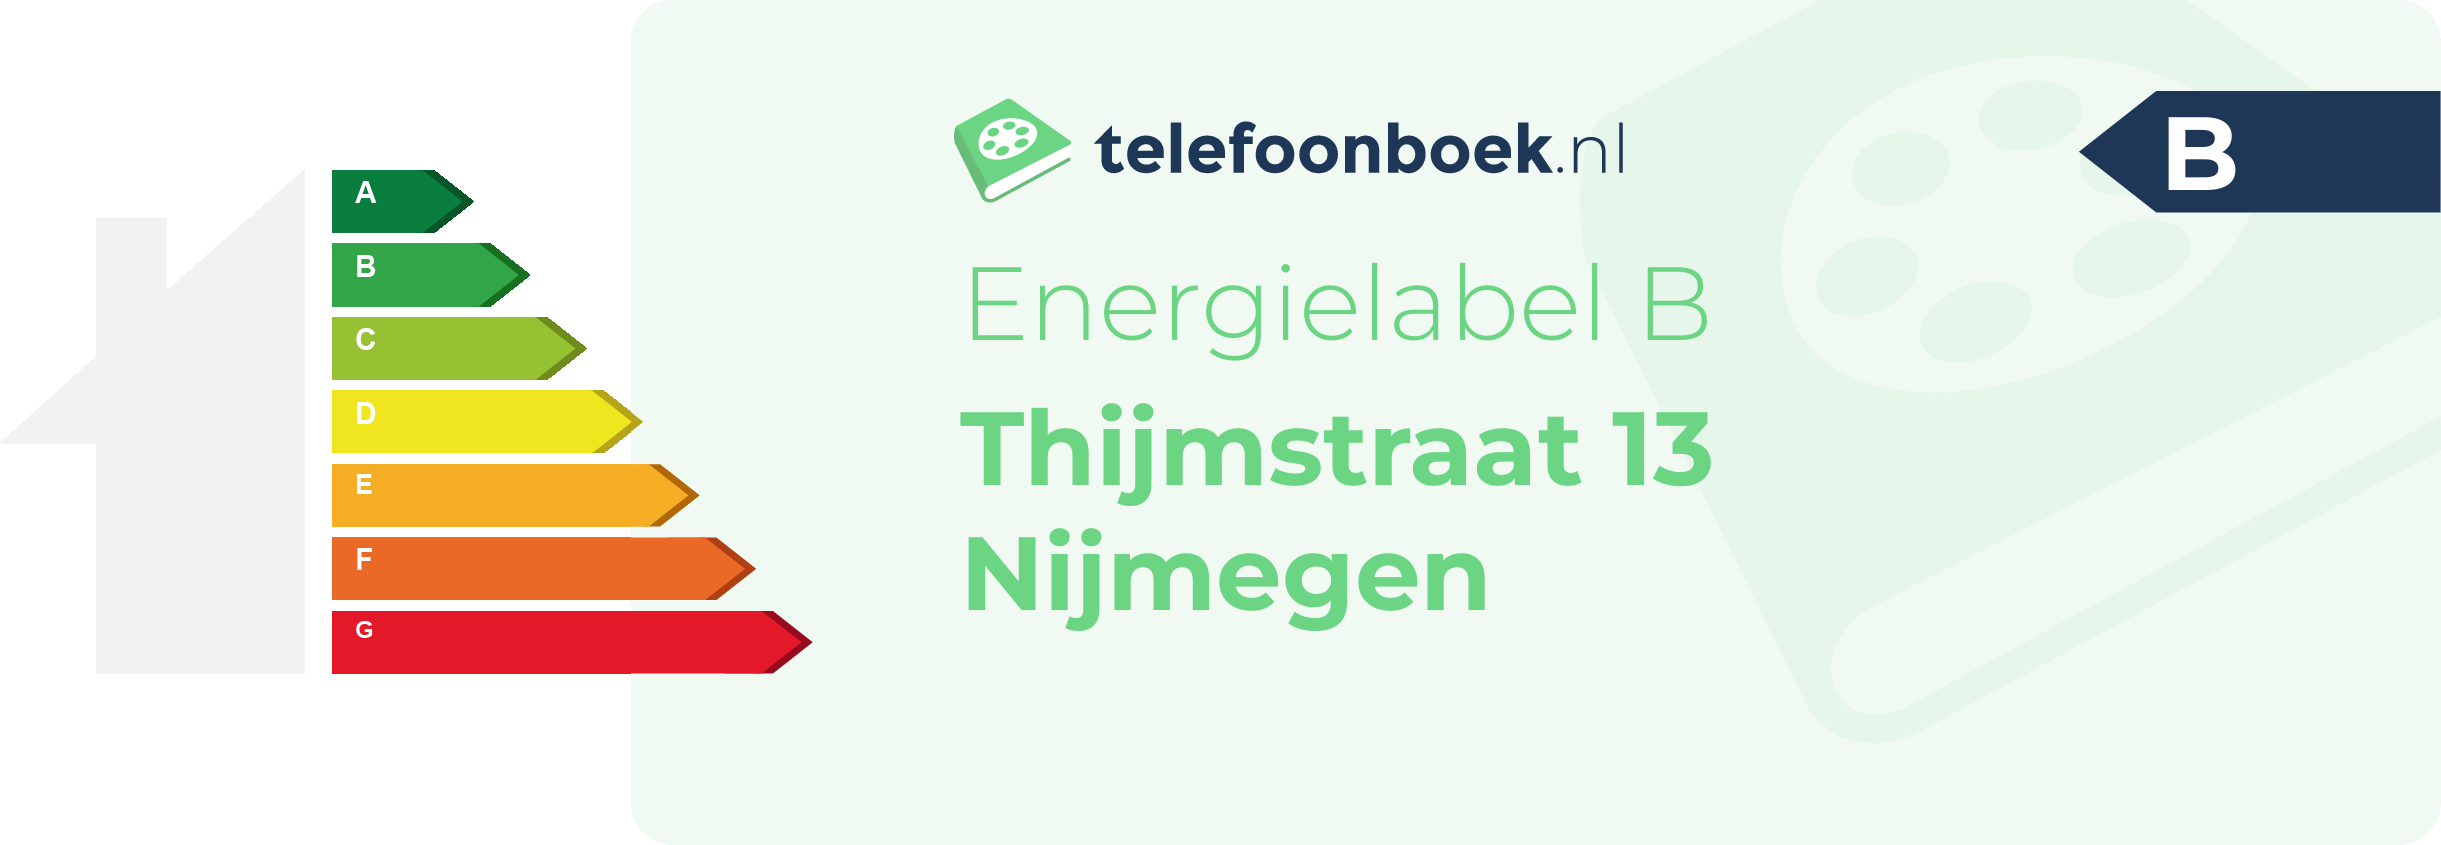 Energielabel Thijmstraat 13 Nijmegen